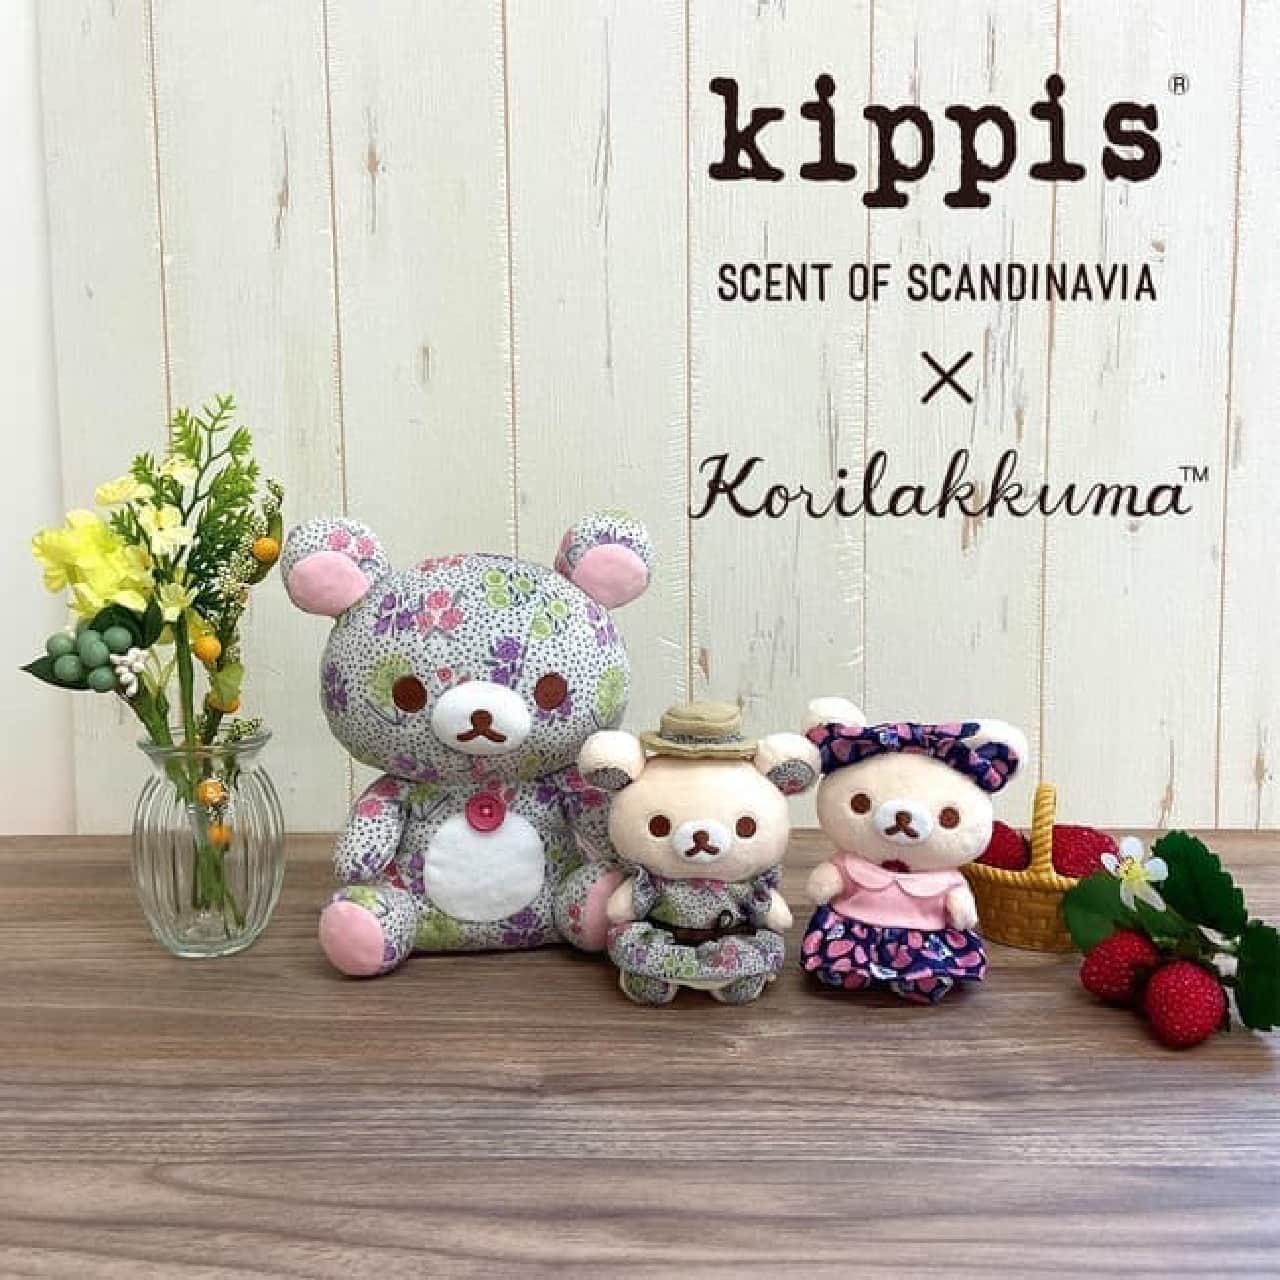 Scandinavian design "kippis" x Korilakkuma collaboration product --For a limited time at Korilakkuma store etc.